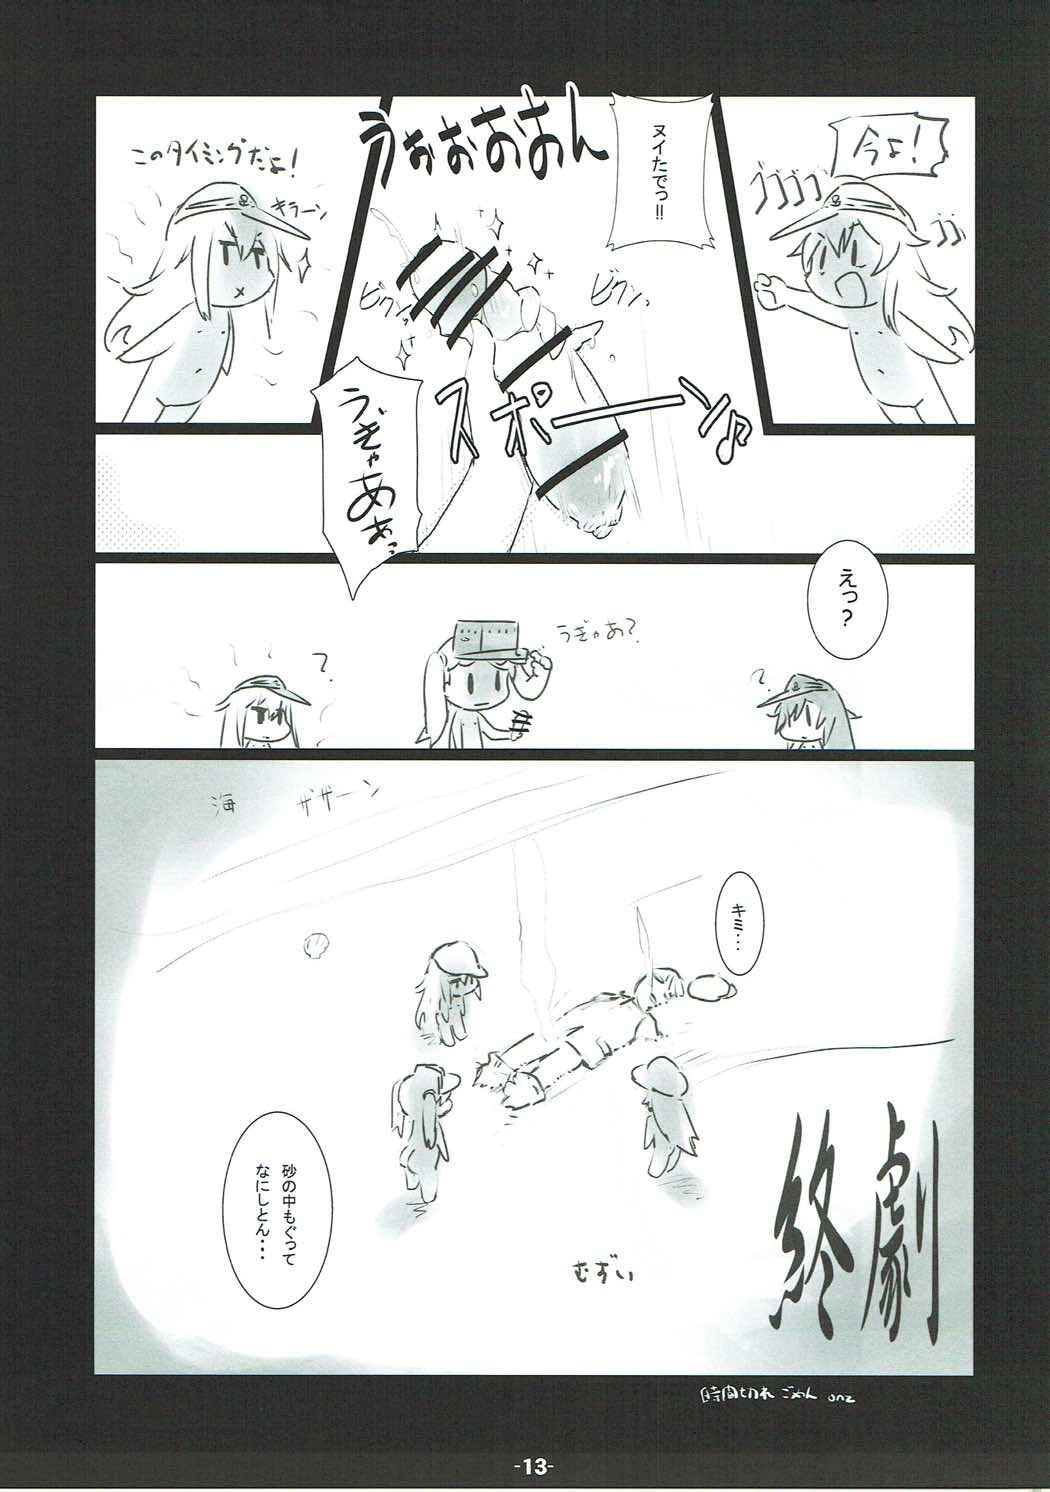 Spandex HsHs Sasete yo RJ-chan! - Kantai collection Dominatrix - Page 12